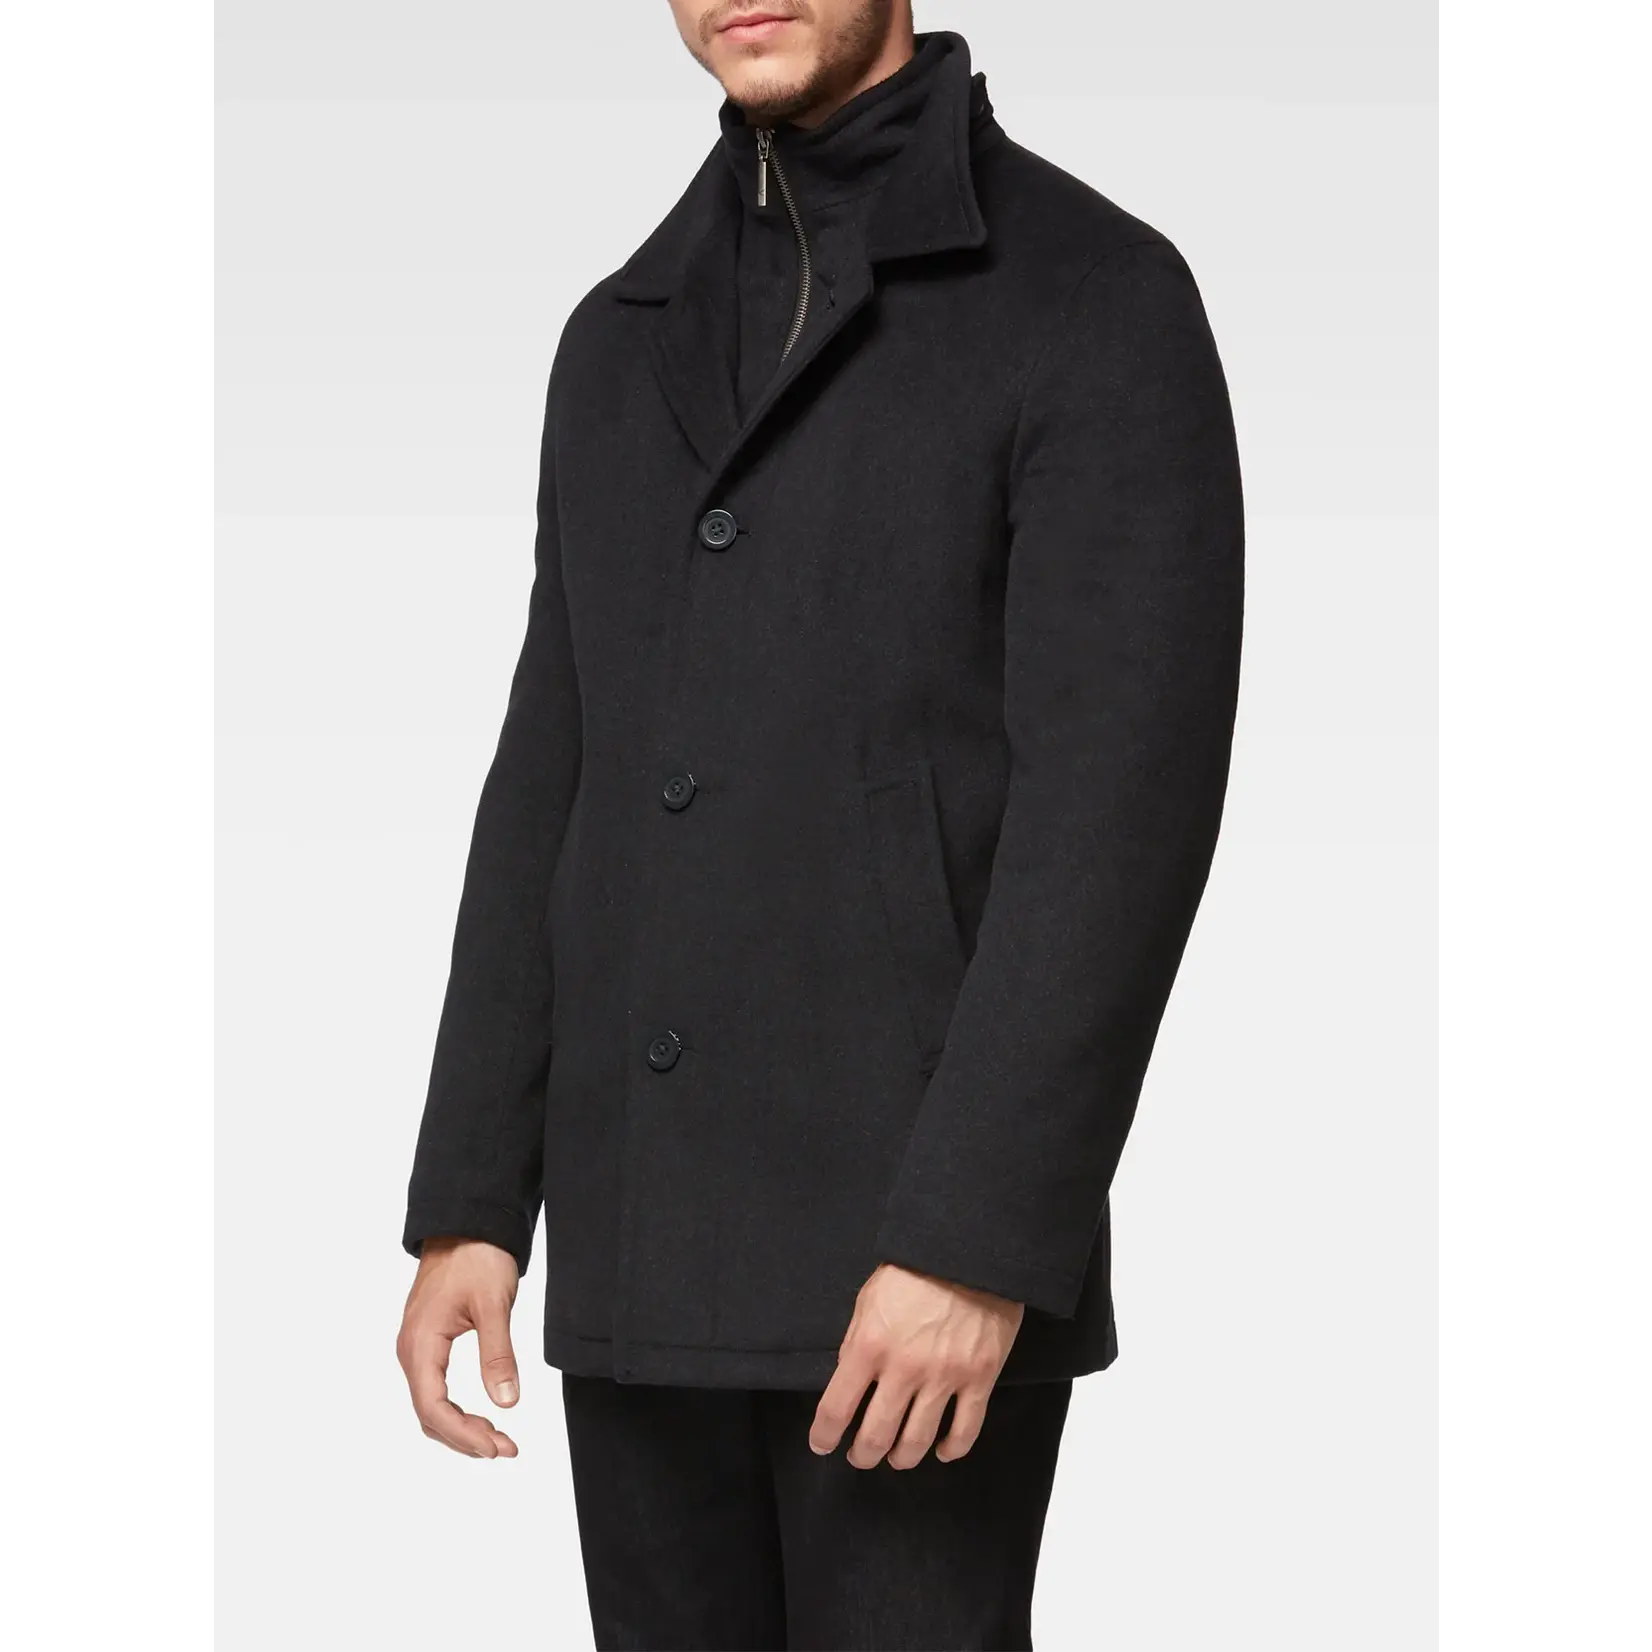 Vincent D'Amerique Vincent D'Amerique Mens dress jacket/over coat with zip off lining